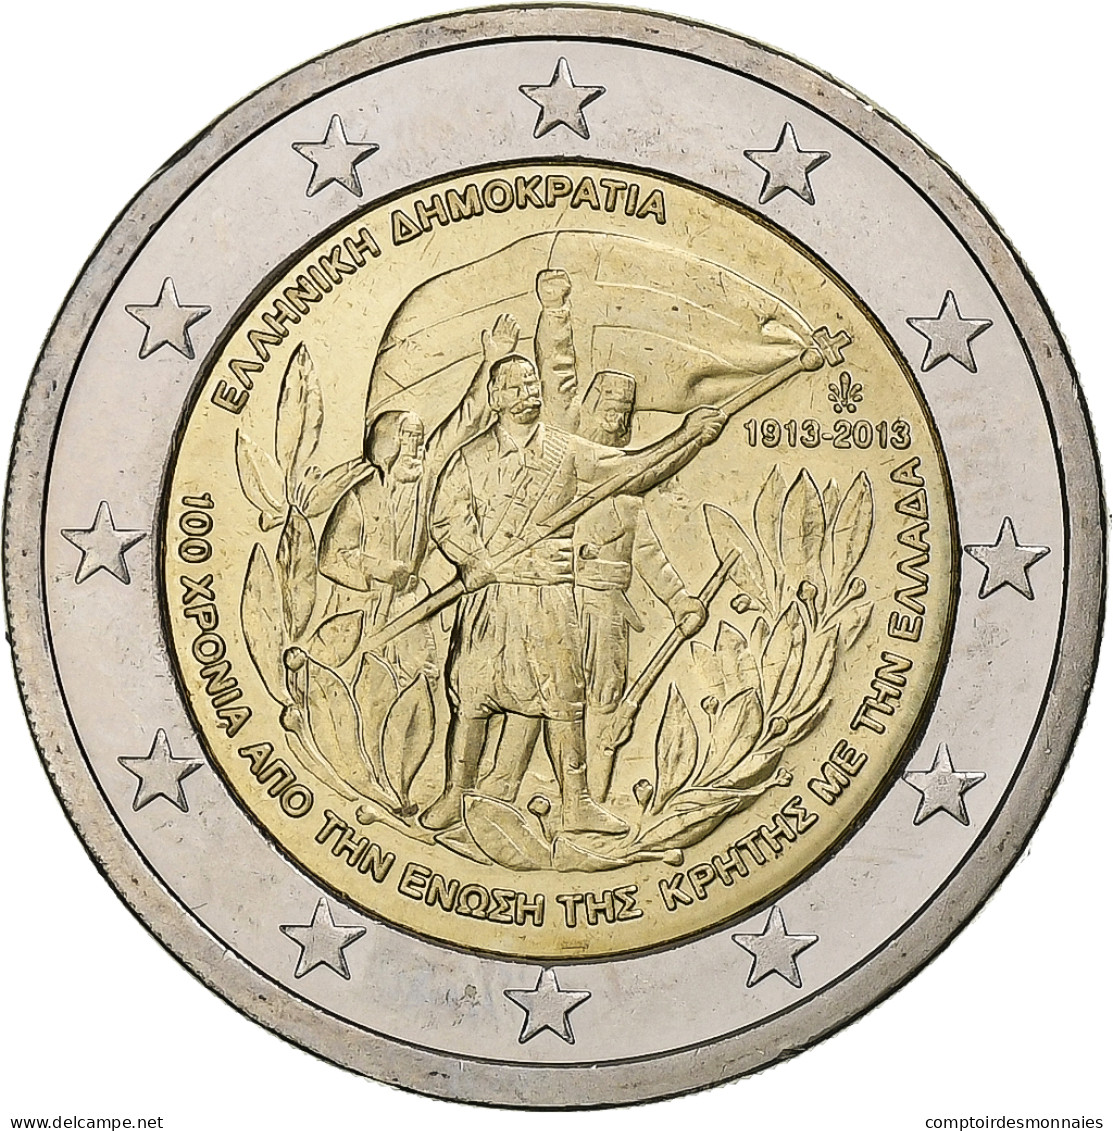 Grèce, 2 Euro, Crète - Grèce, 2013, Athènes, SUP, Bimétallique - Grecia